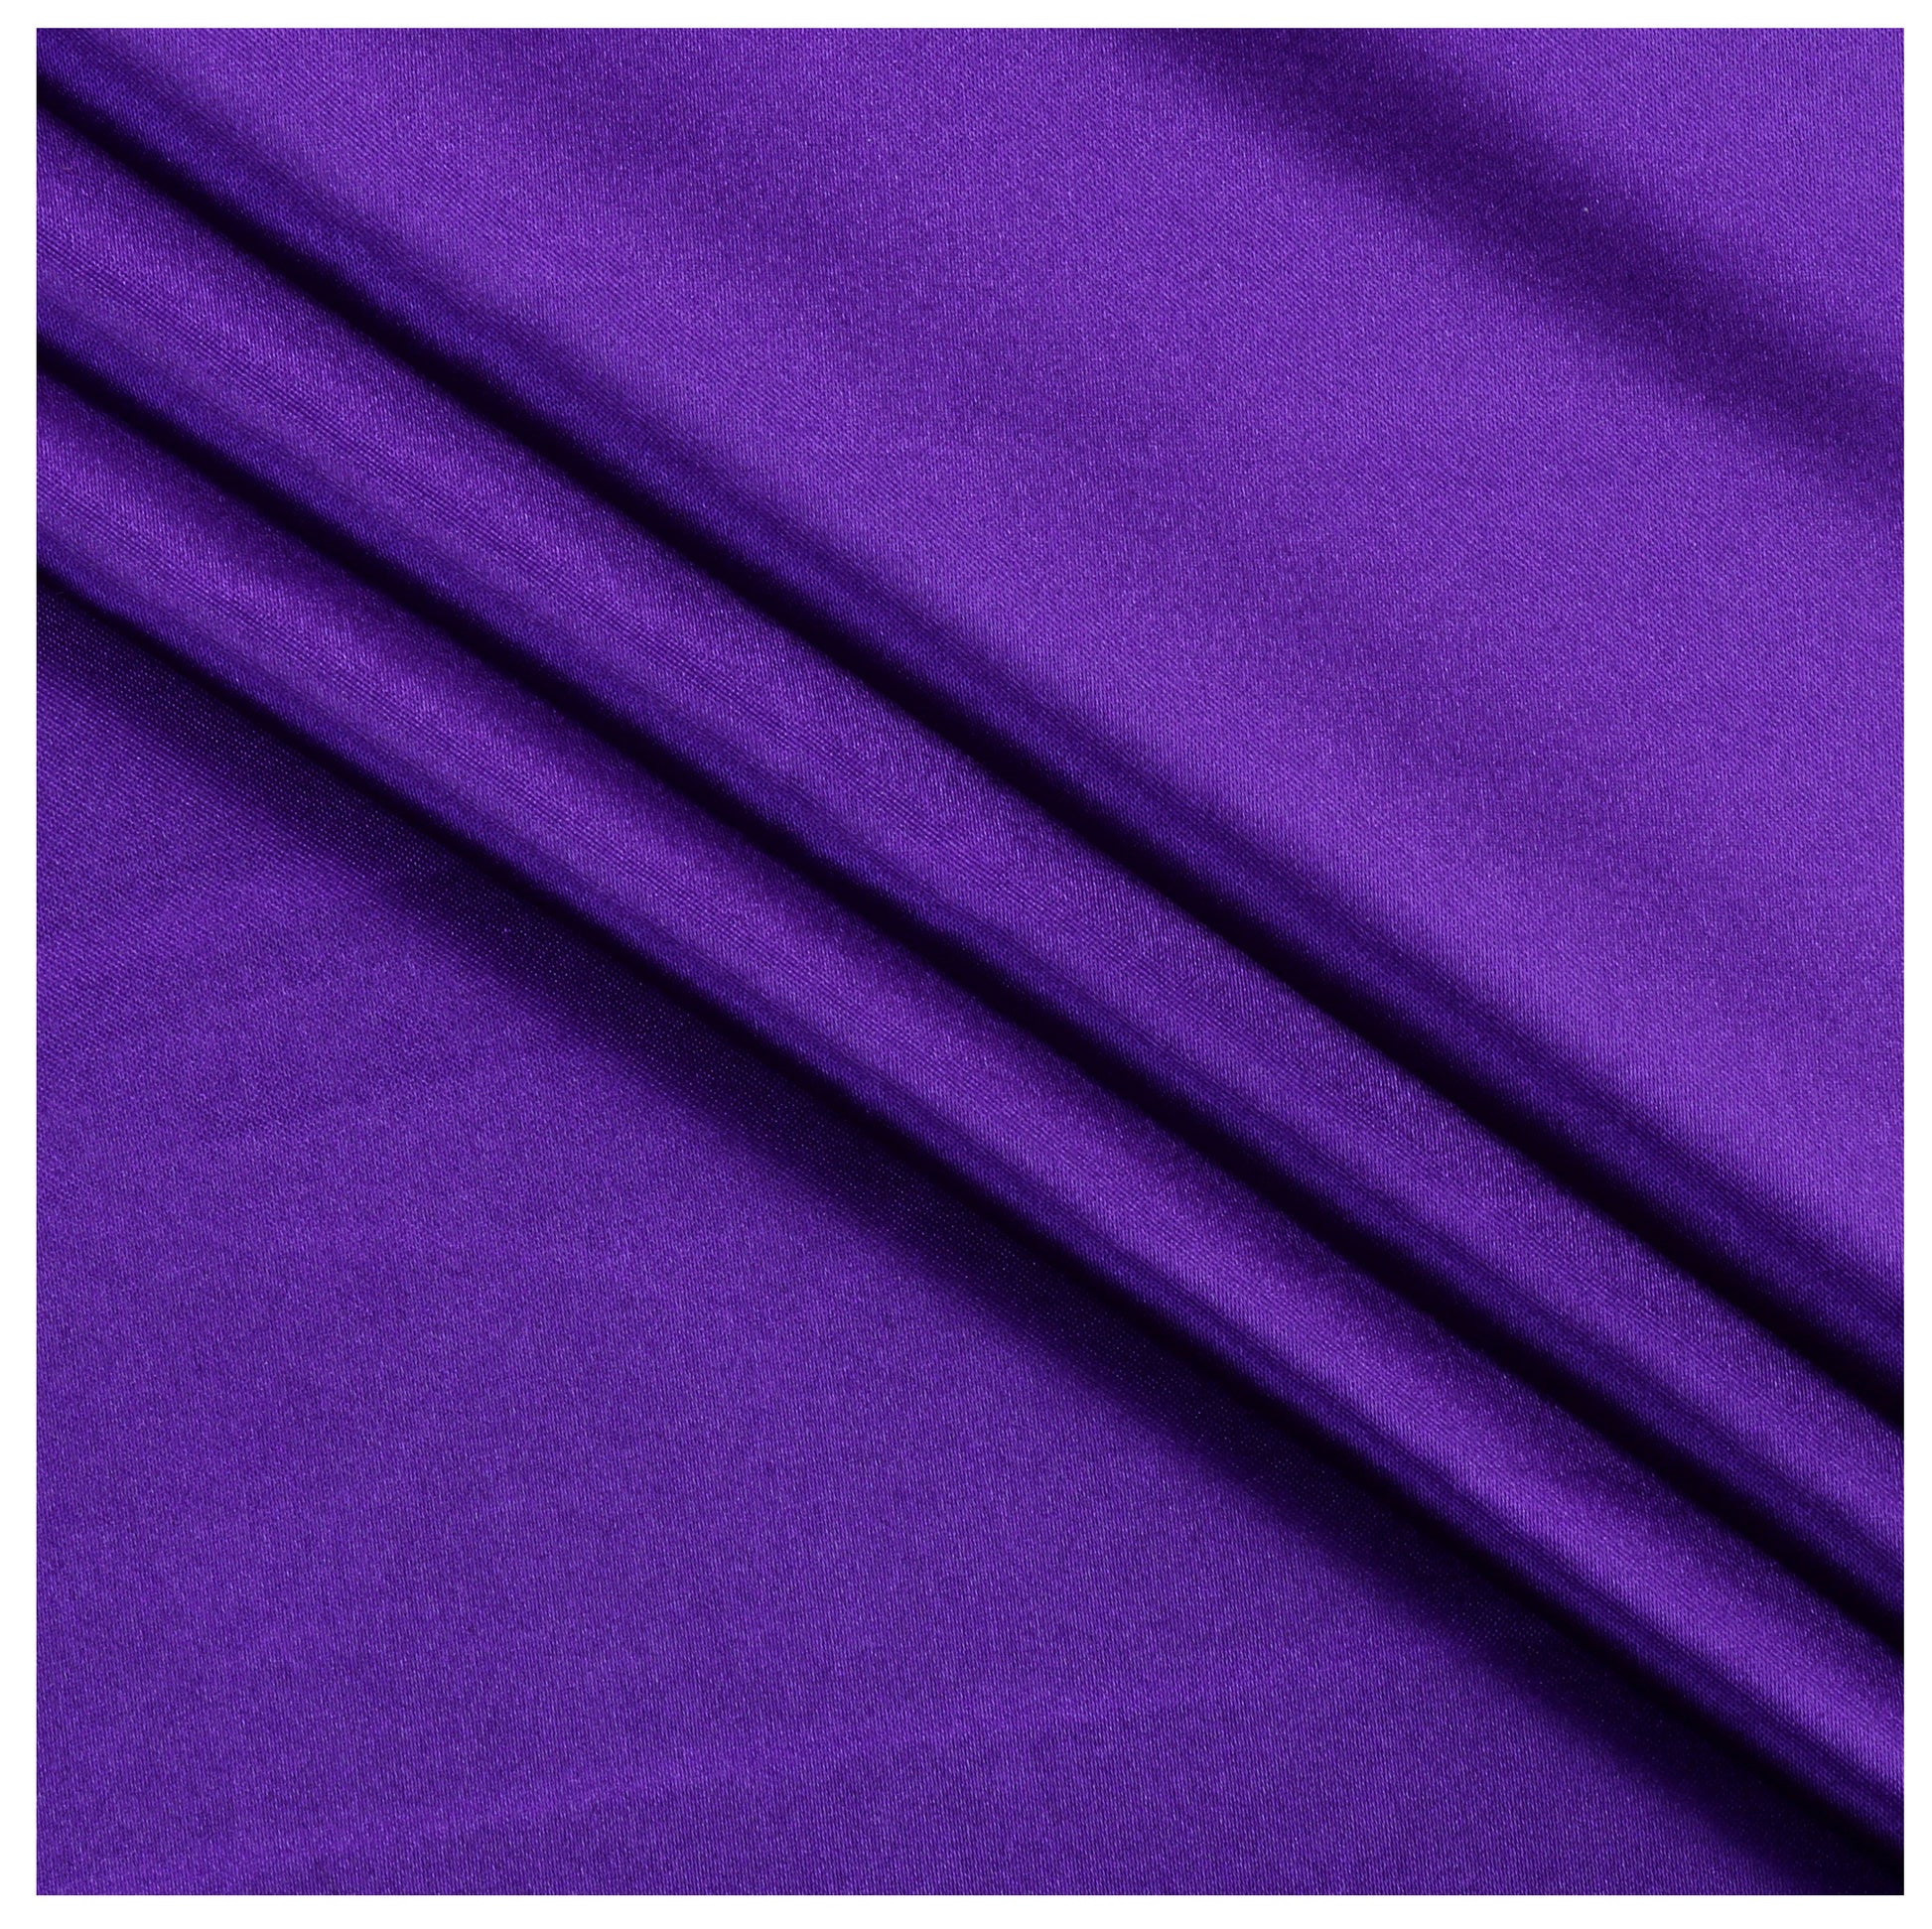 Cadbury Purple,44a87f2a-df68-4288-8079-880076f7ec16